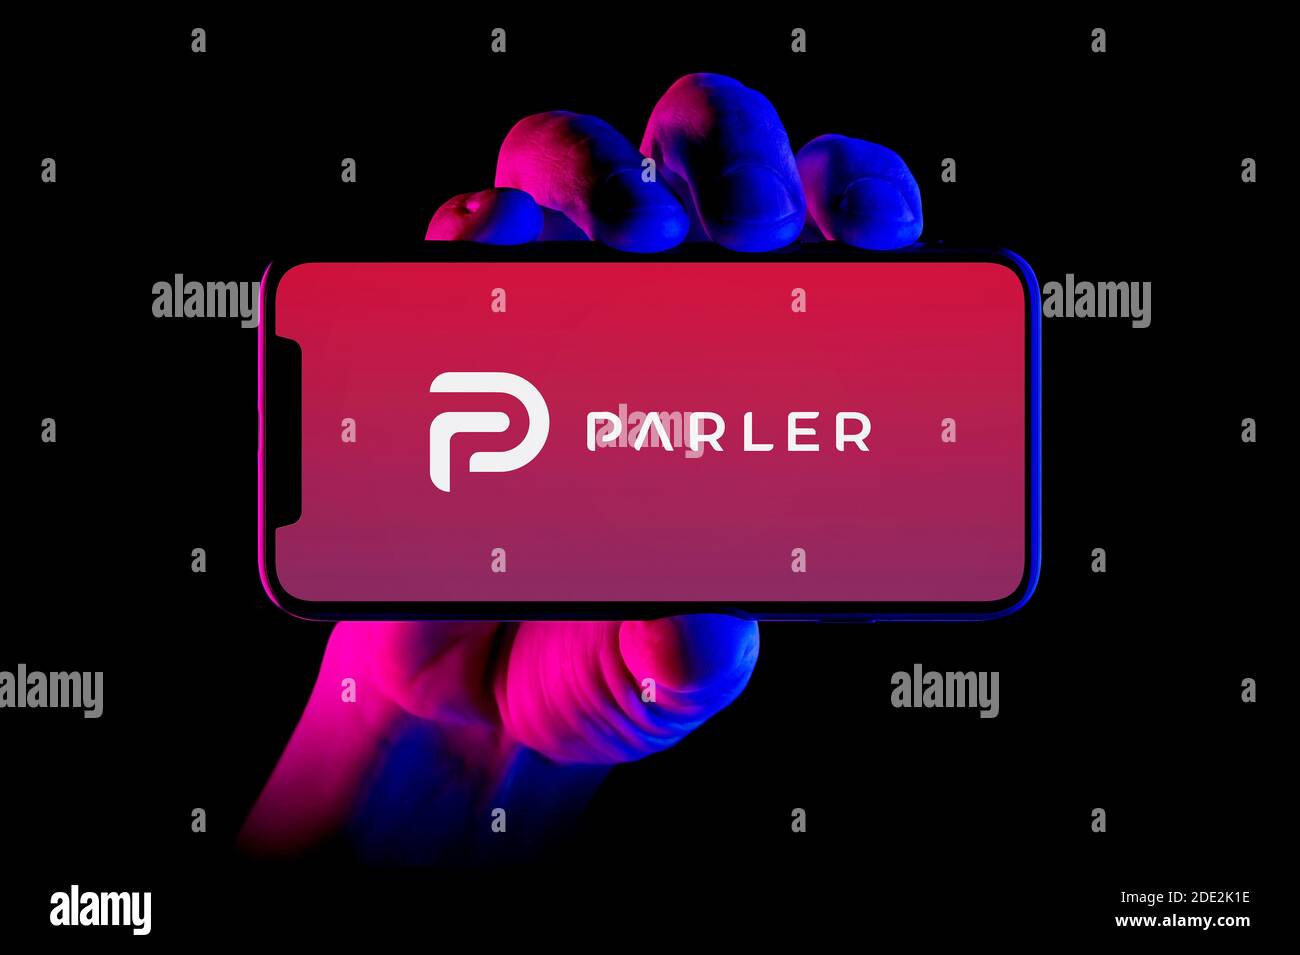 Un smartphone affichant le logo Parler est tenu par une prise de vue à la main sur fond noir (usage éditorial uniquement). Banque D'Images